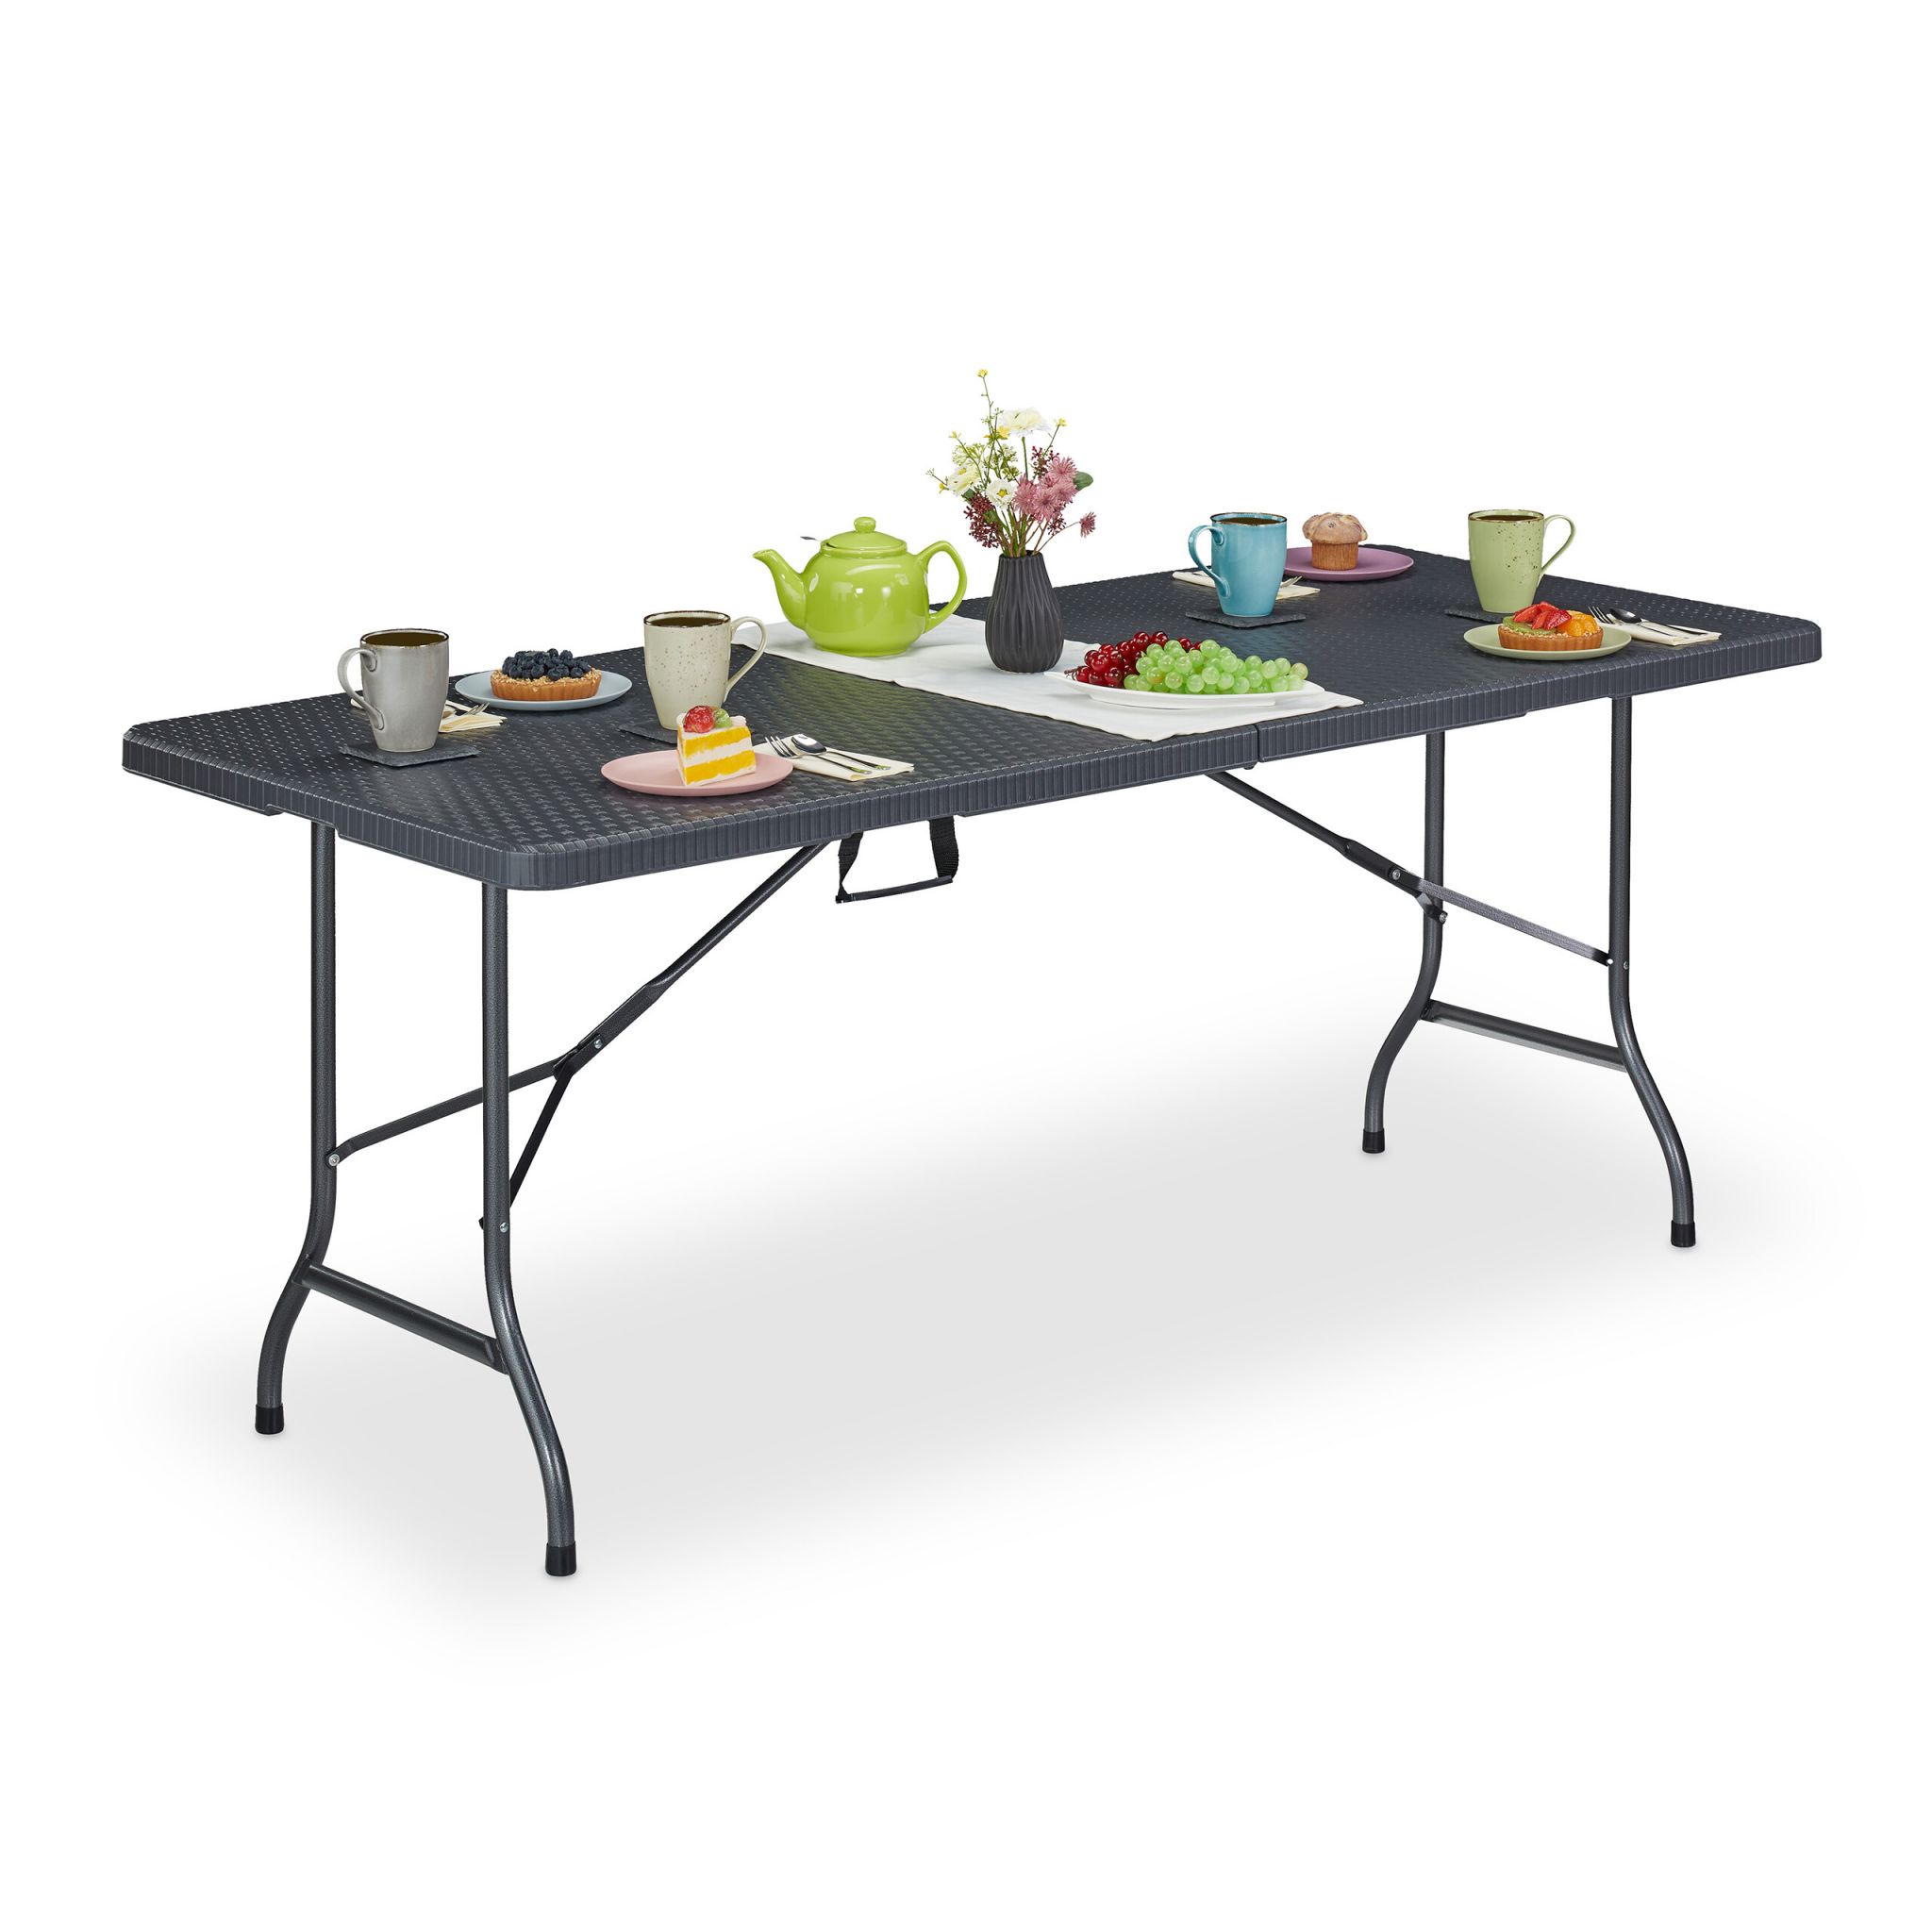 Záhradný stôl v ratanovom vzhľade, RD45721, sivá